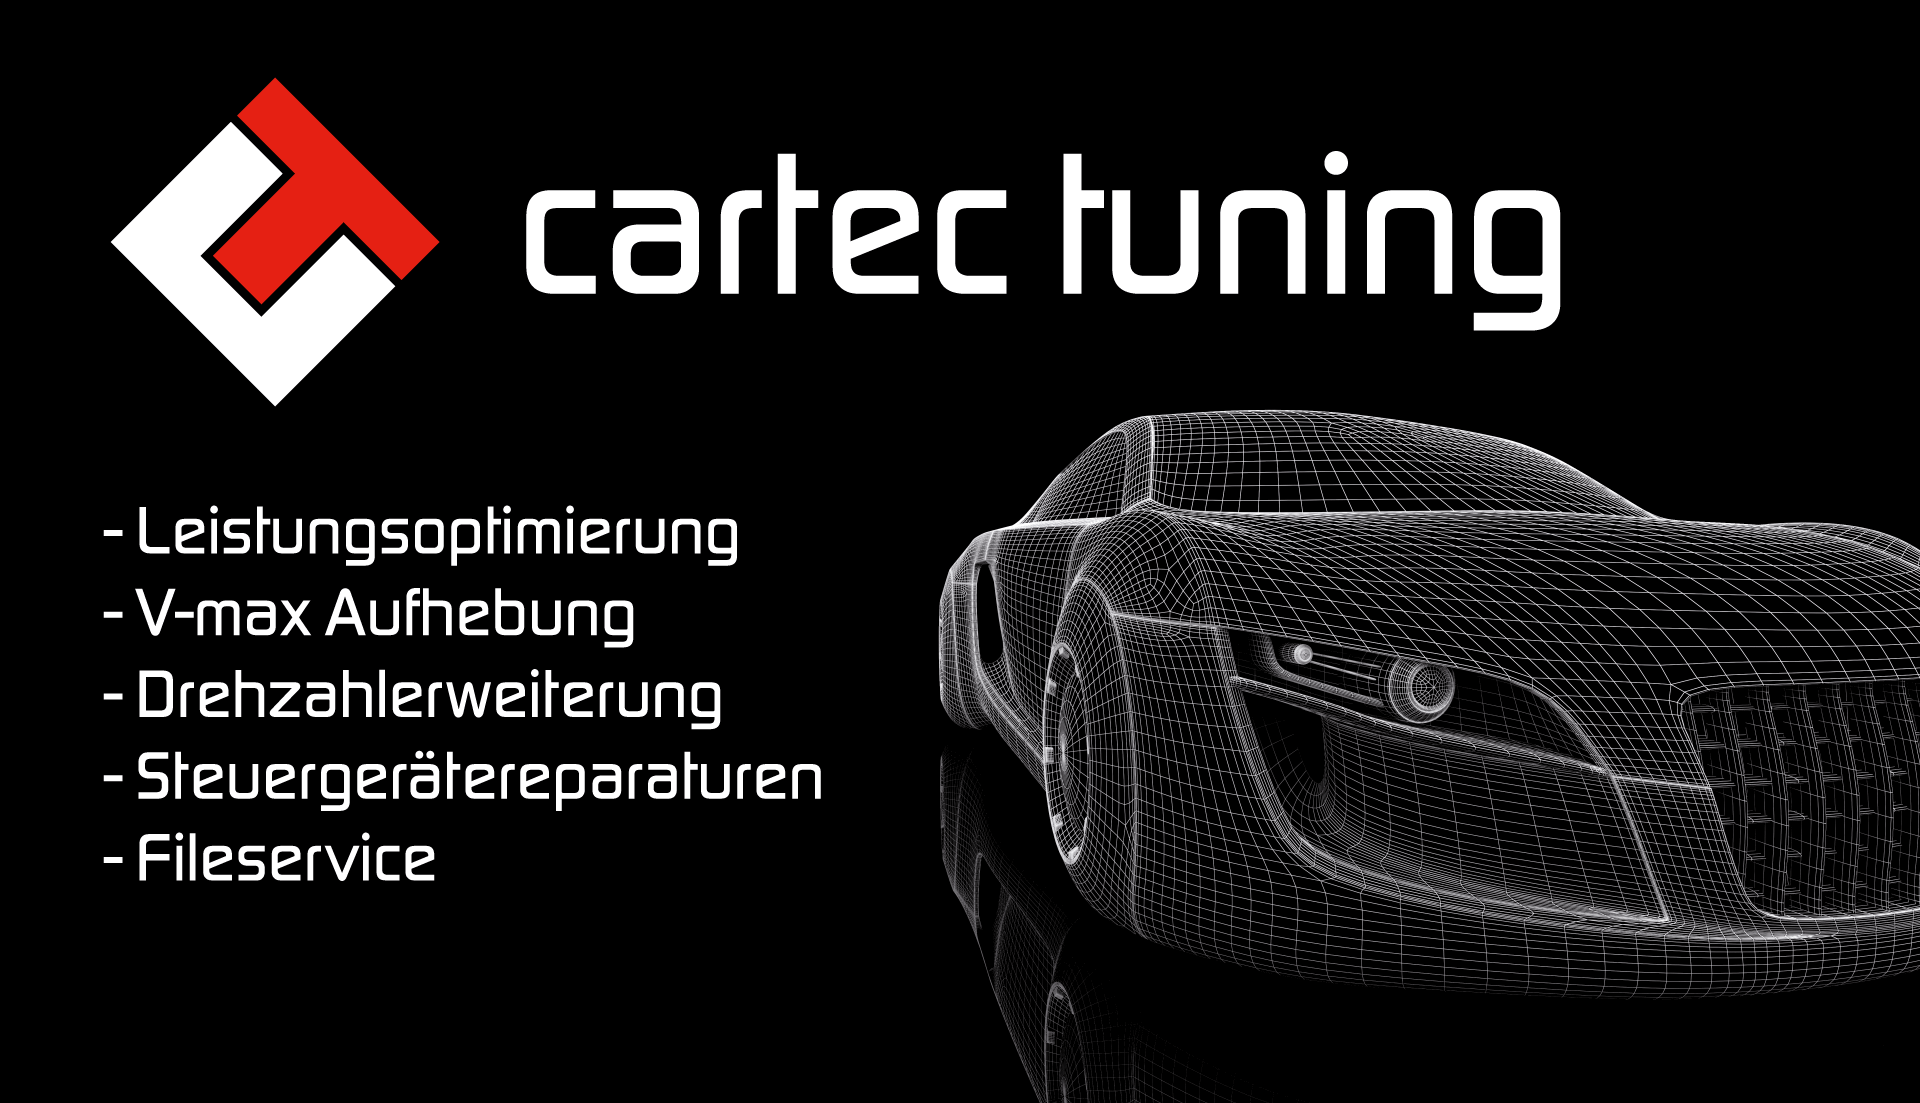 (c) Cartec-tuning.de